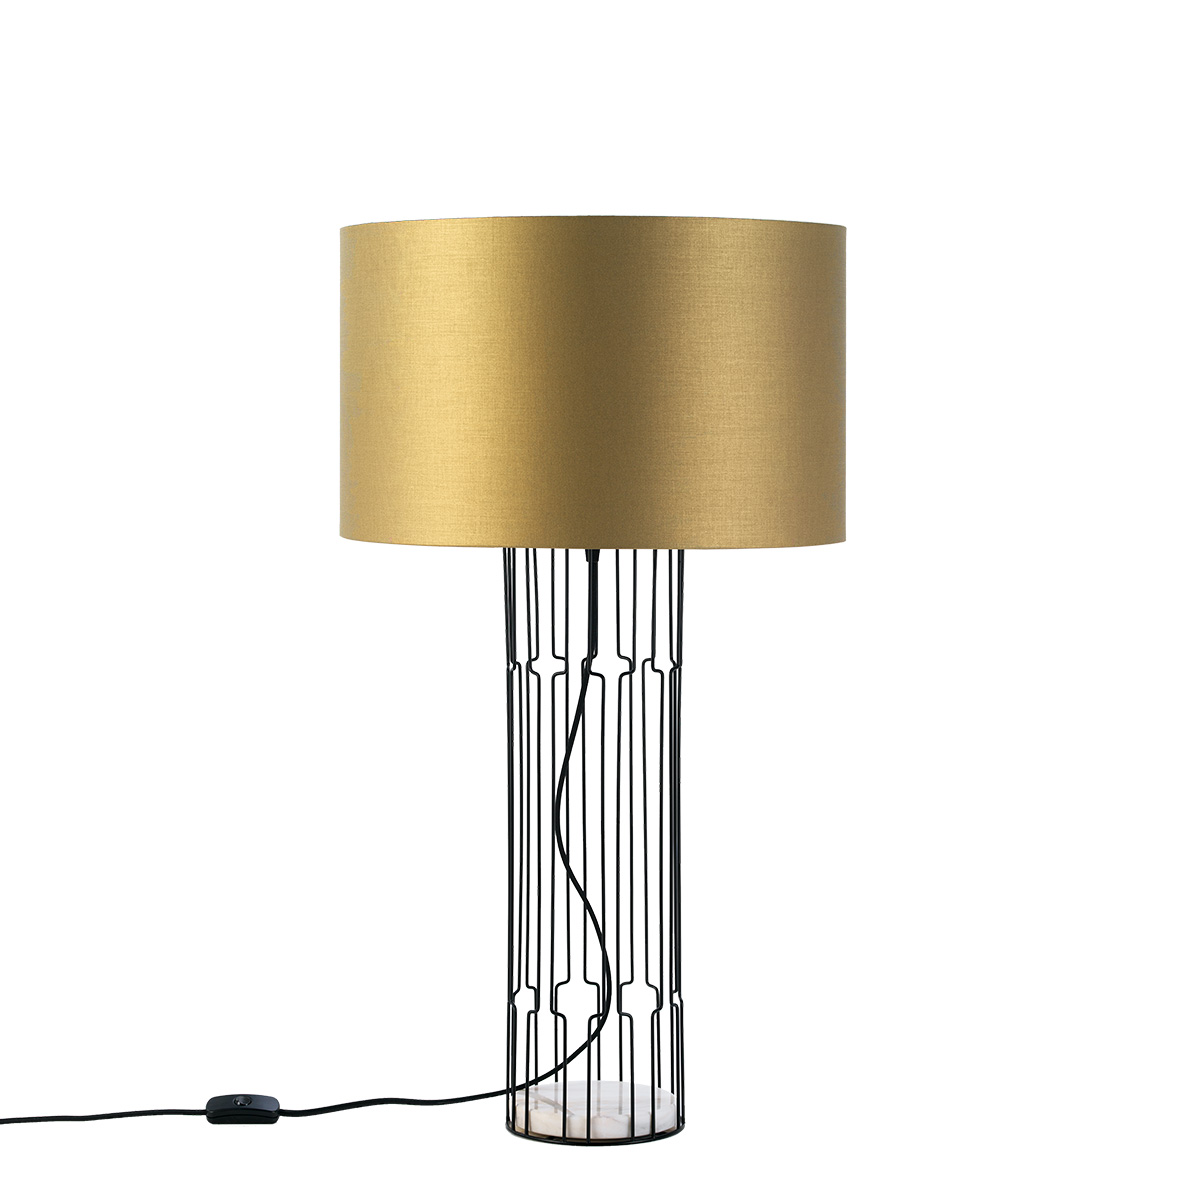 Μοντέρνο επιτραπέζιο φωτιστικό IMPERIAL modern table lamp